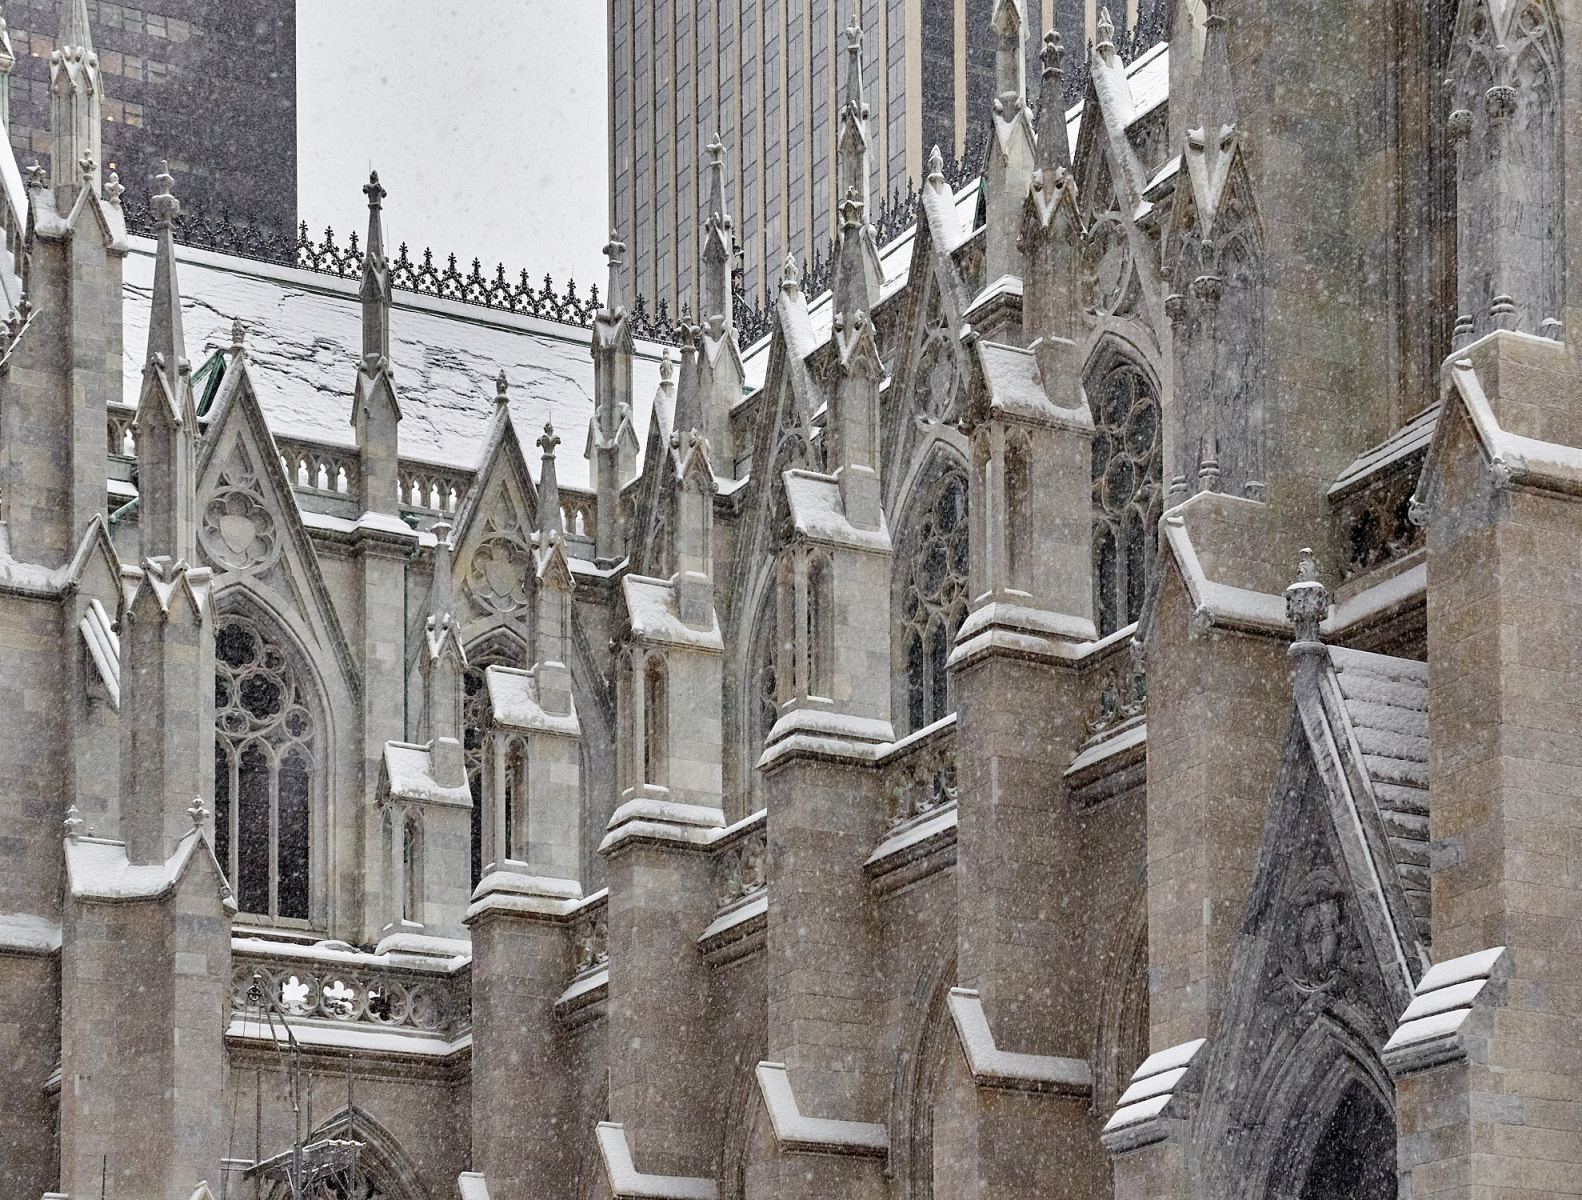 St. Patrick's Cathedral, New York, NY